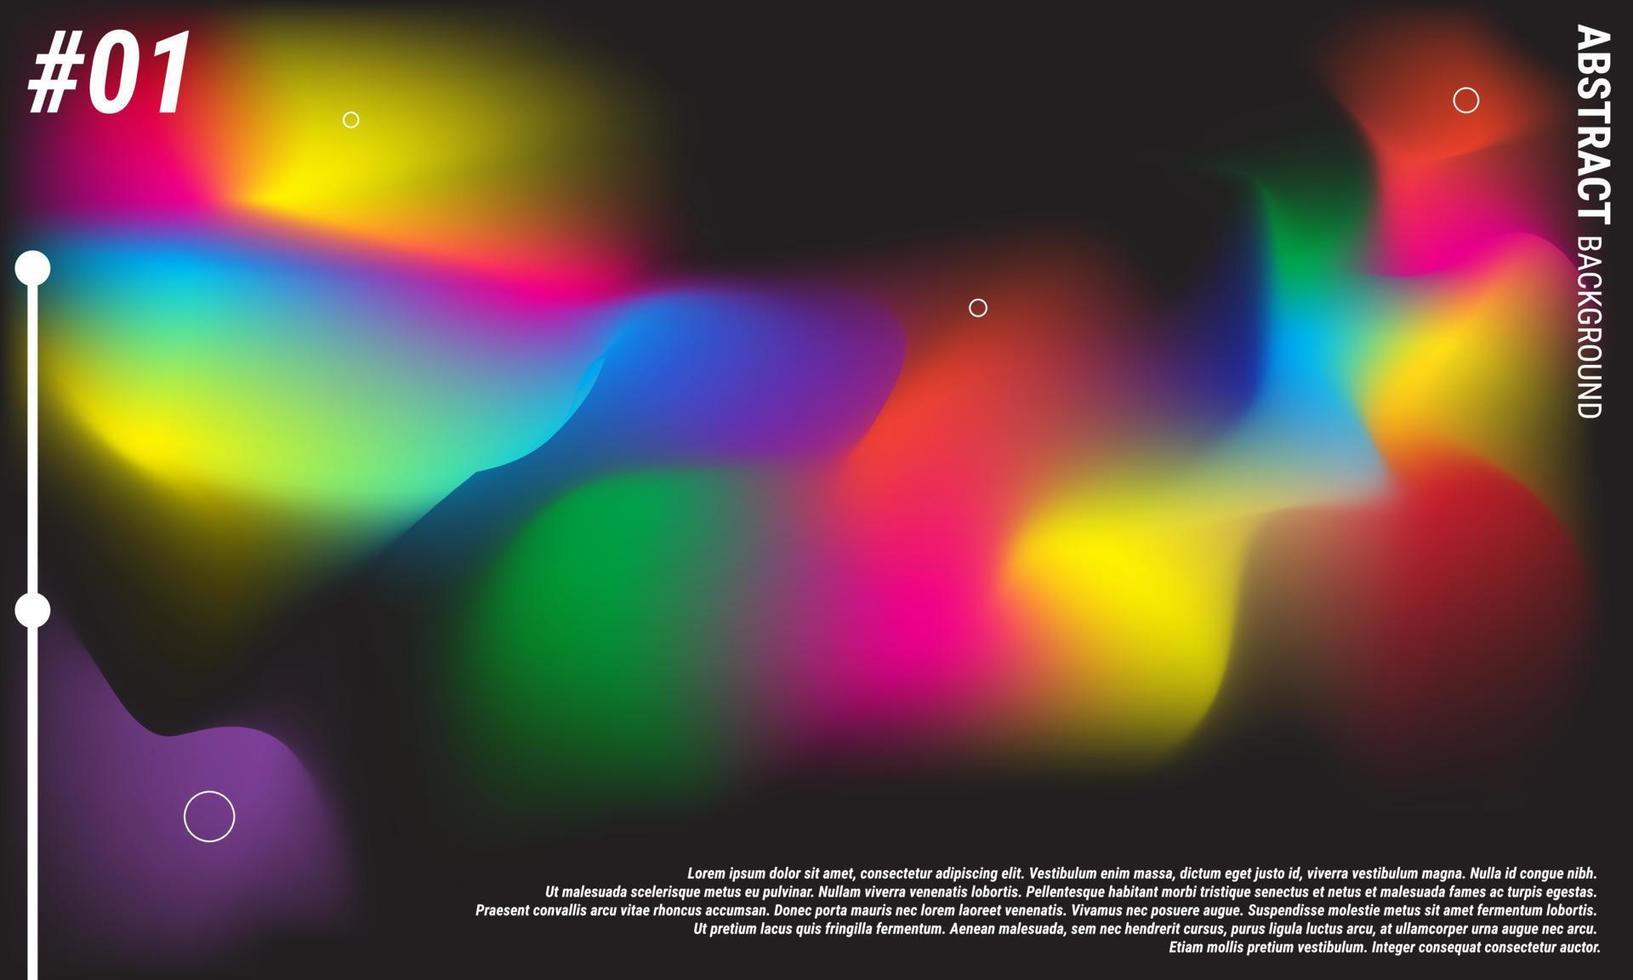 omslag mallar med nordlig och polär lampor. magnetisk stormar. aurora borealis. konst för banderoller, flygblad, plakat och affischer. eps 10 vektor illustration